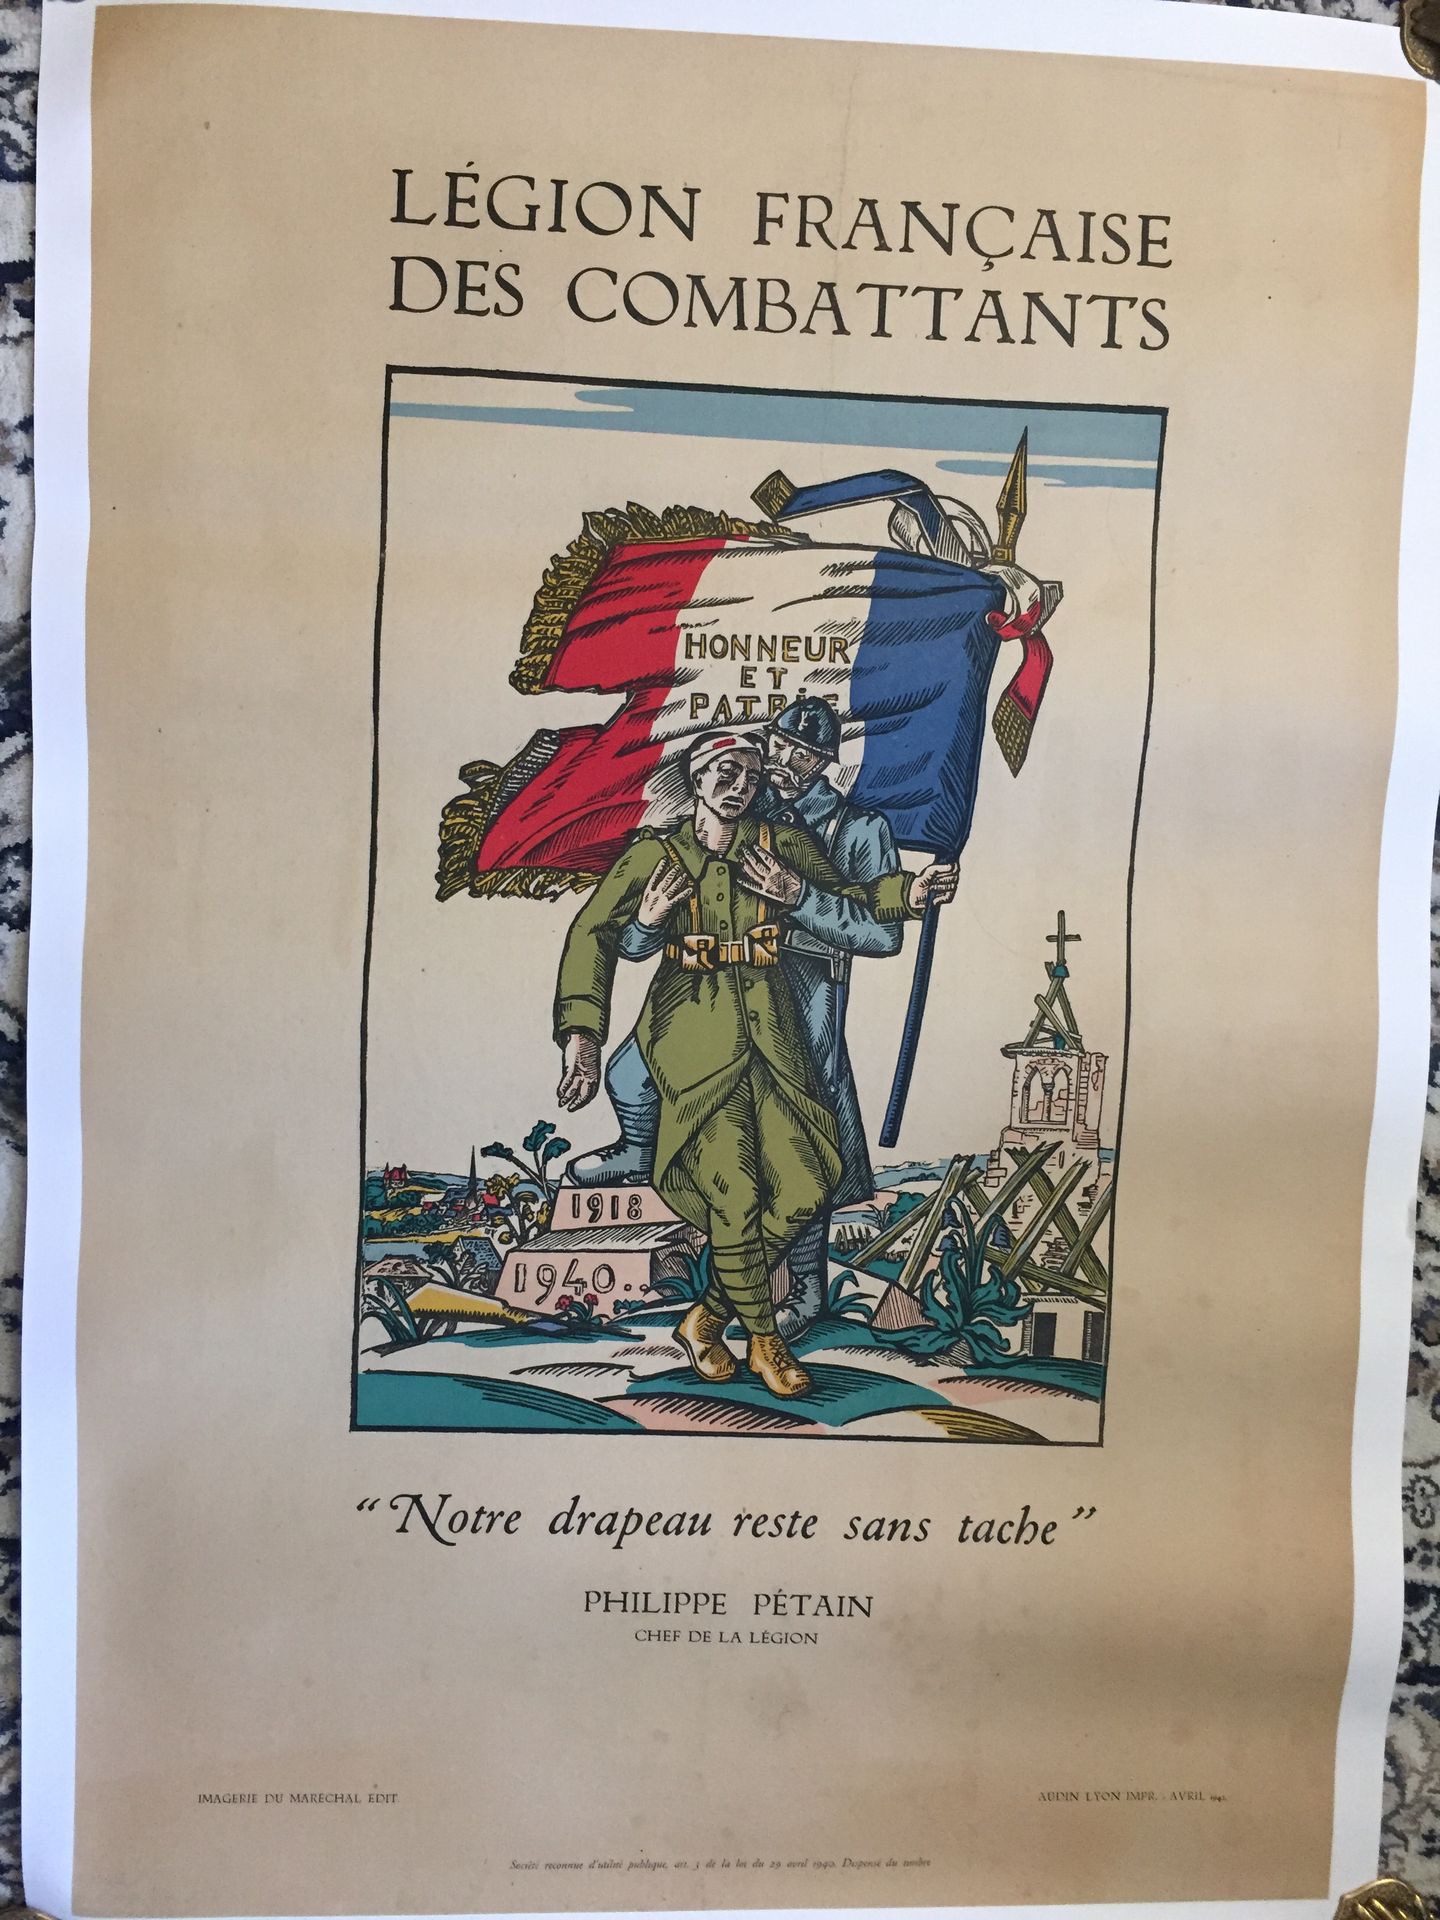 Null 战争39/45 - 合作 -LVF法国战斗军团。"我们的旗帜仍然没有被玷污"。菲利普-贝当的军团团长。帆布海报，以埃皮纳尔图片的风格进行说明，105 &hellip;